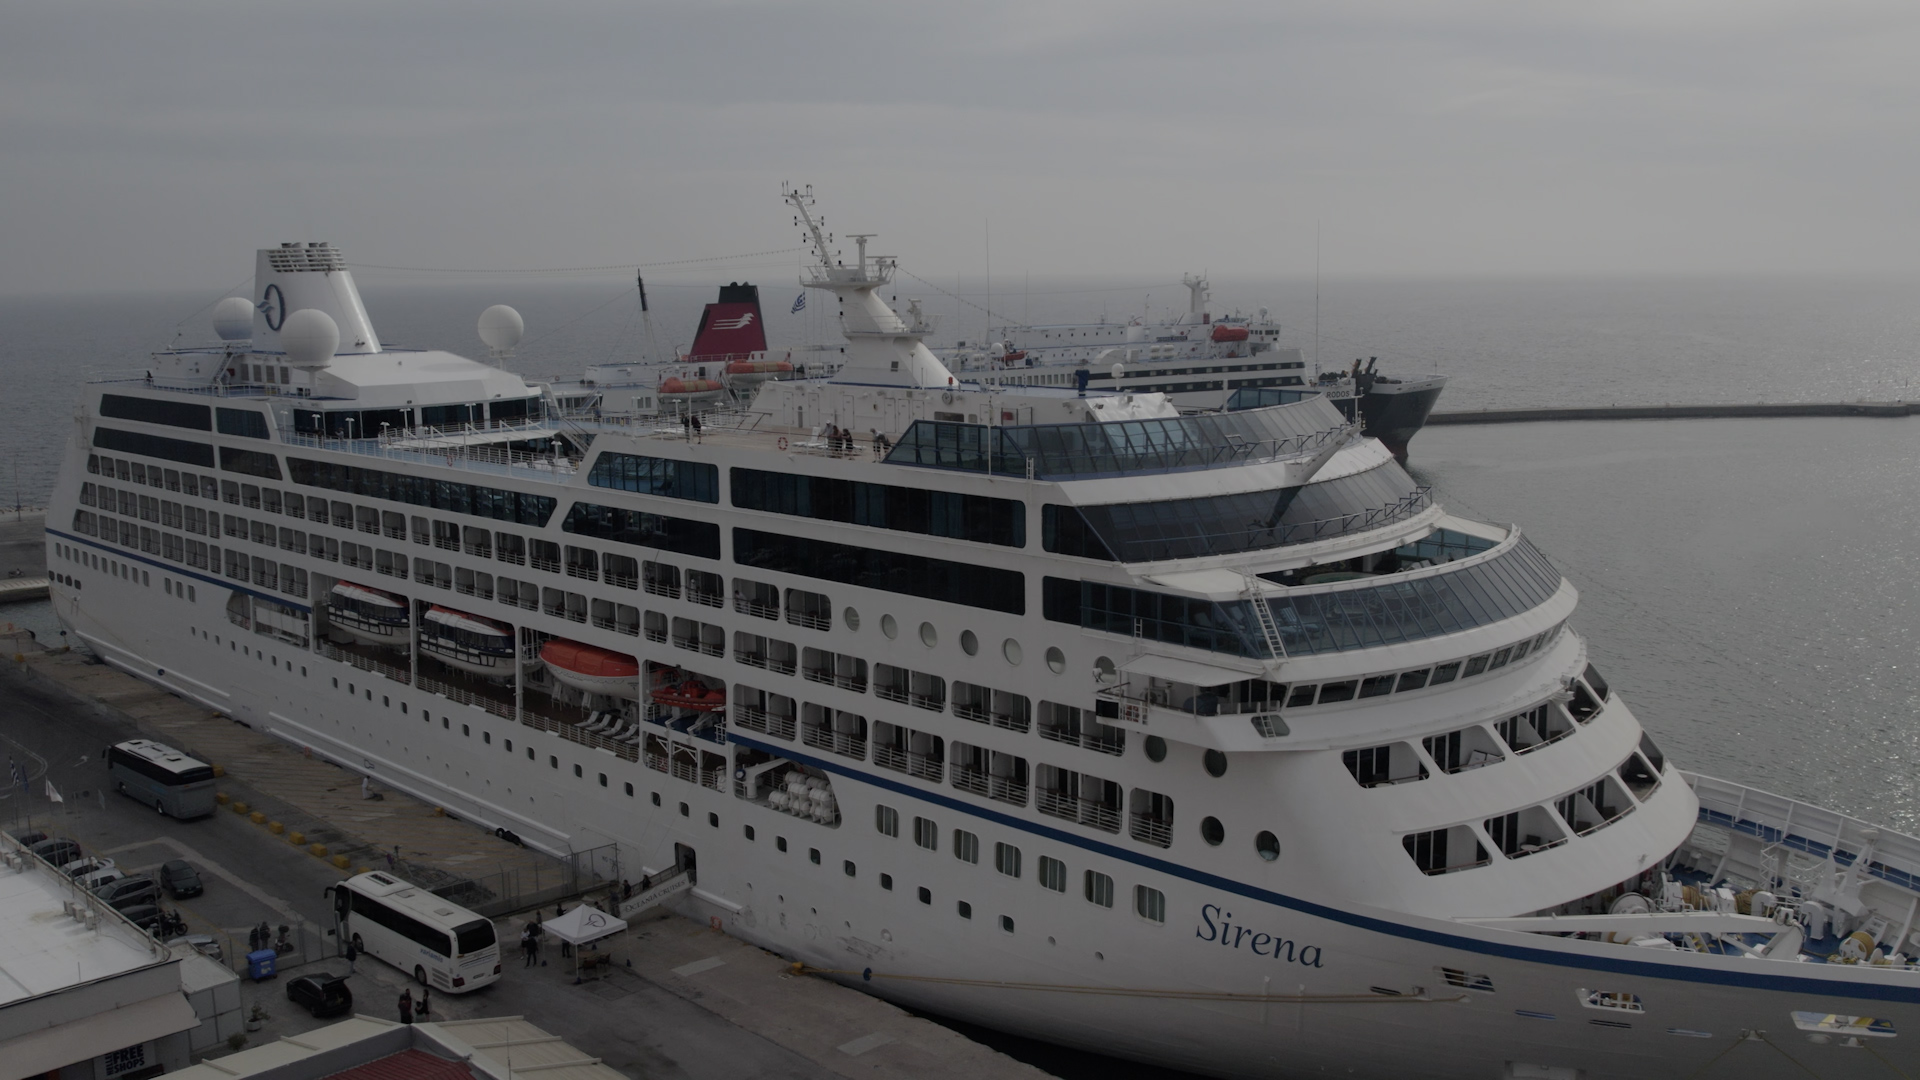 Με 646 επιβάτες το κρουαζιερόπλοιο ”Sirena” στη Μυτιλήνη